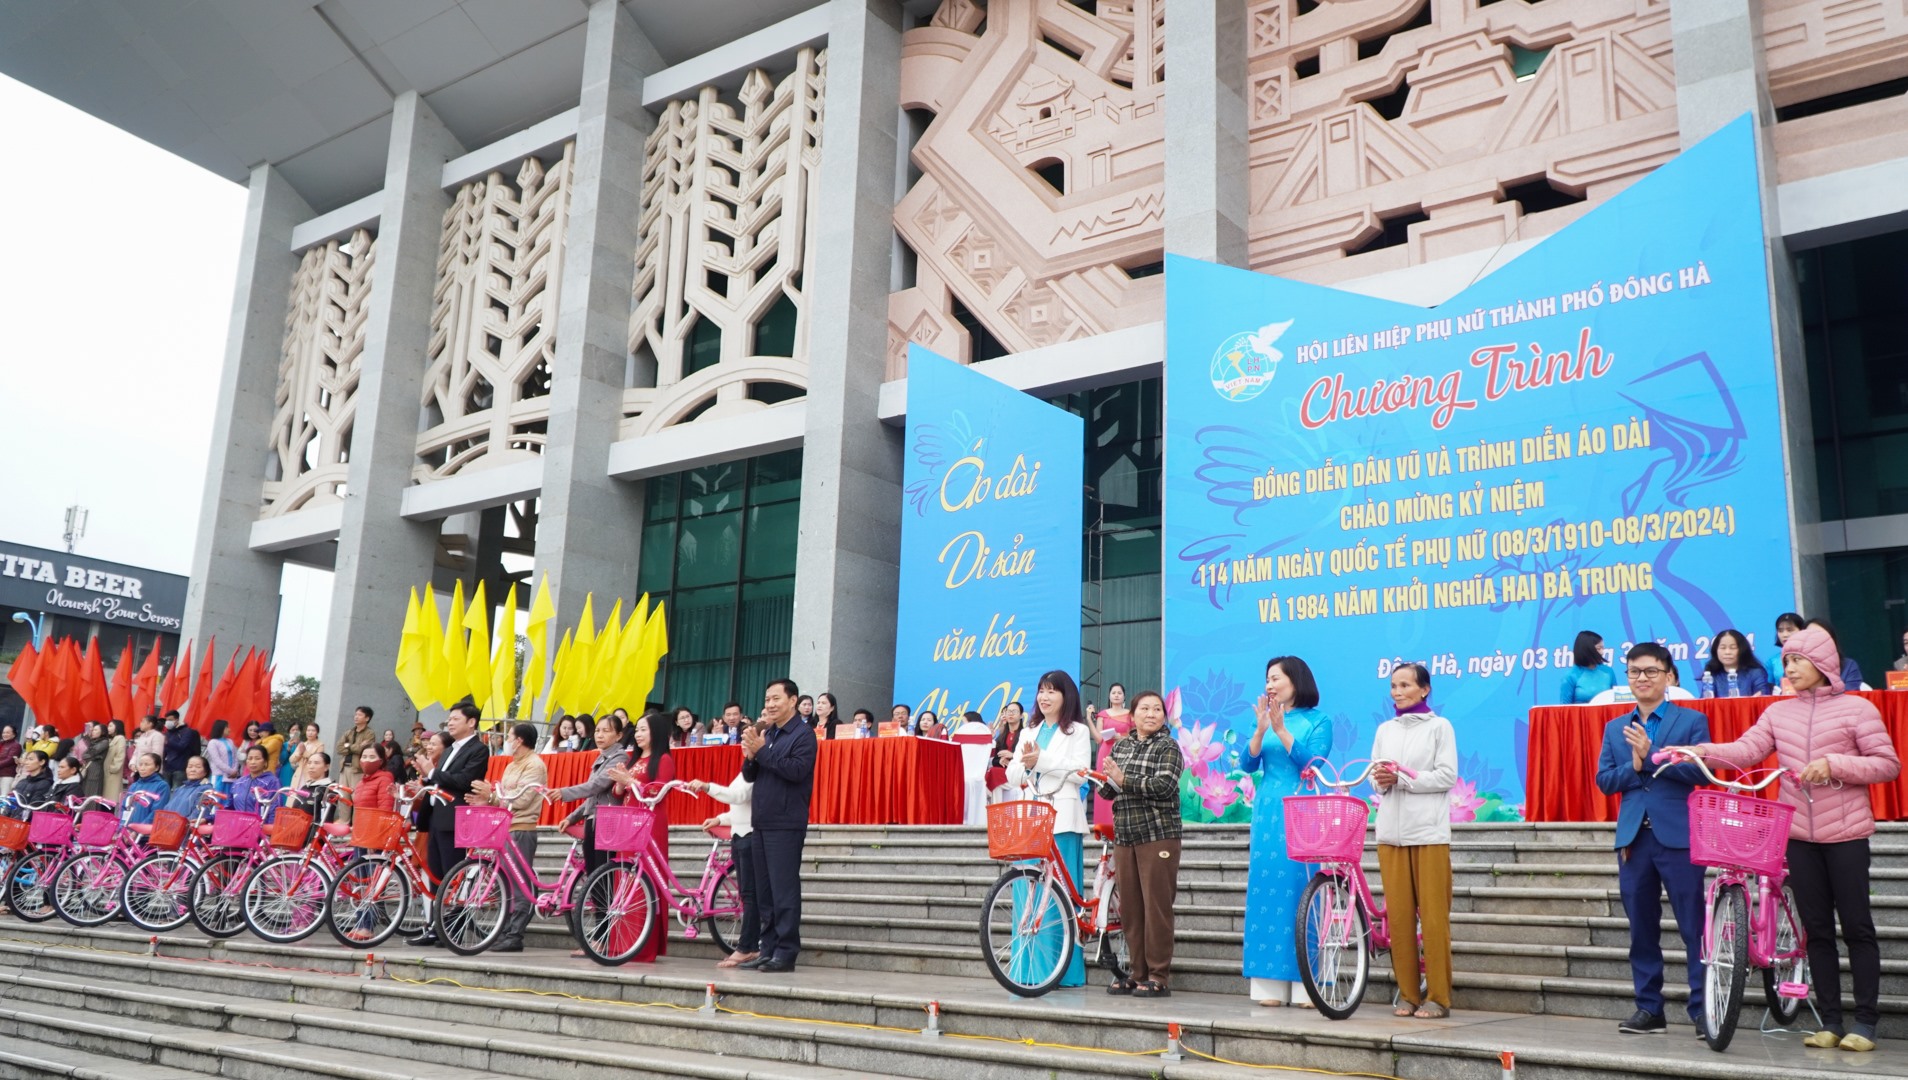 Bí thư Thành ủy Đông Hà Lê Quang Chiến, lãnh đạo Hội LHPN tỉnh trao tặng xe đạp cho các hộ gia đình hội viên phụ nữ có hoàn cảnh khó khăn trên địa bàn thành phố - Ảnh: Lê Trường